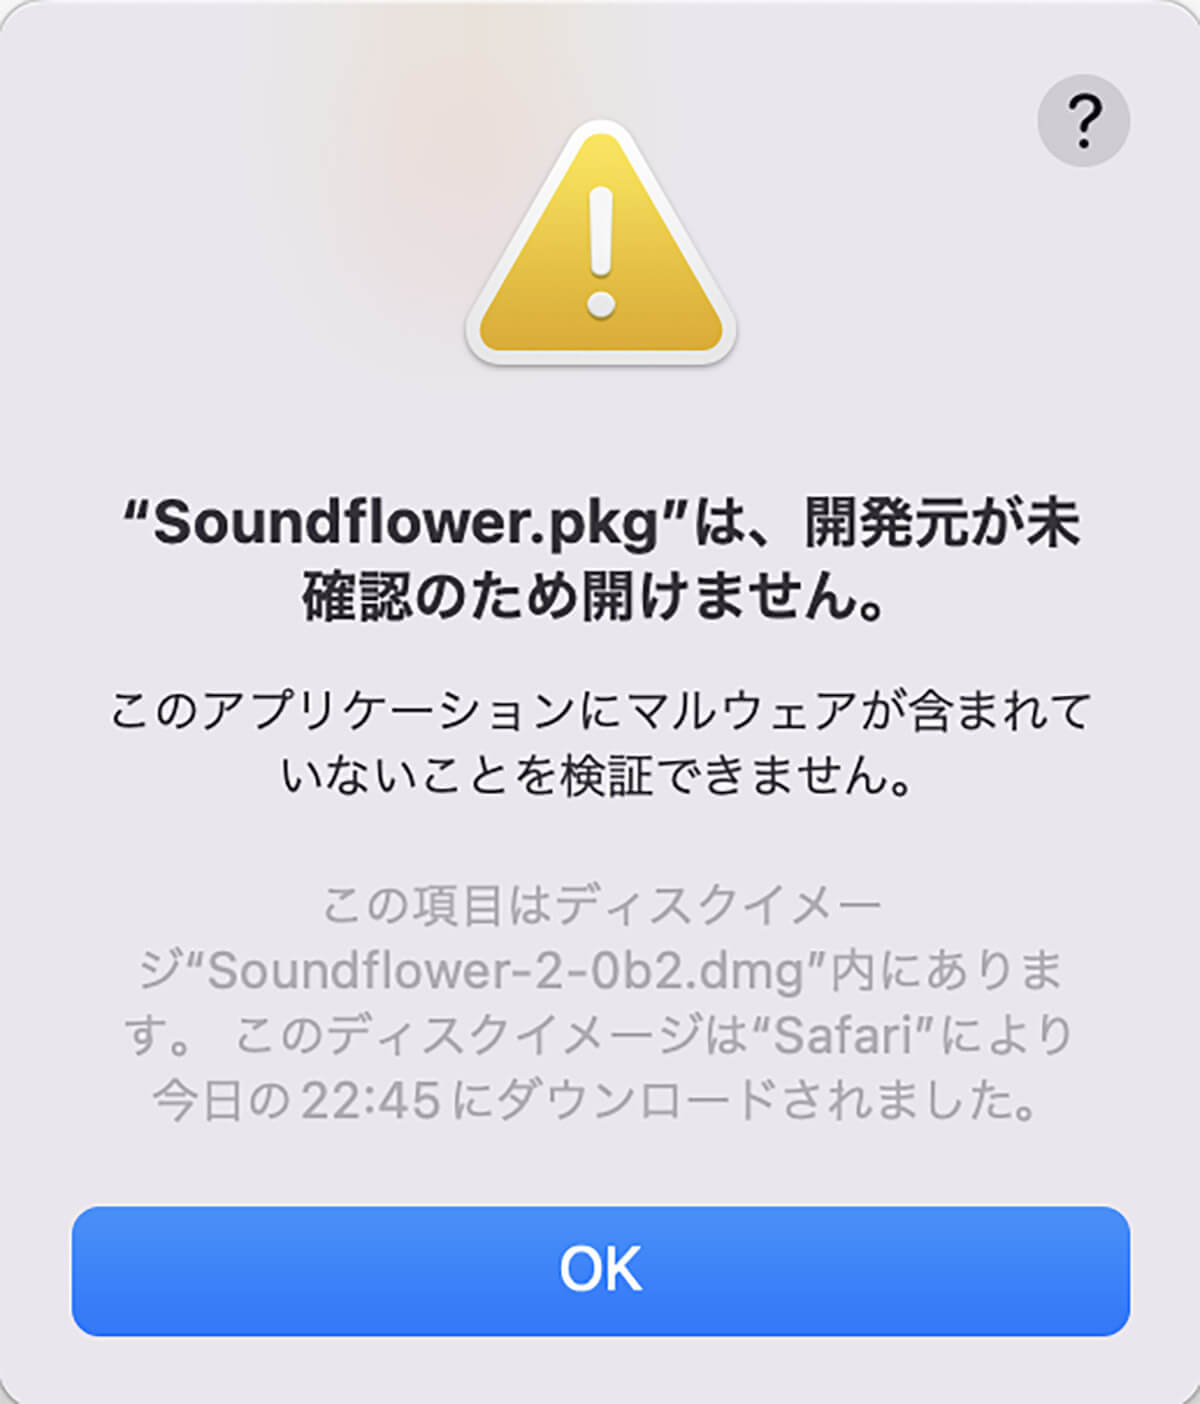 【方法③】Soundflowerを使って音声付きで録画/収録5